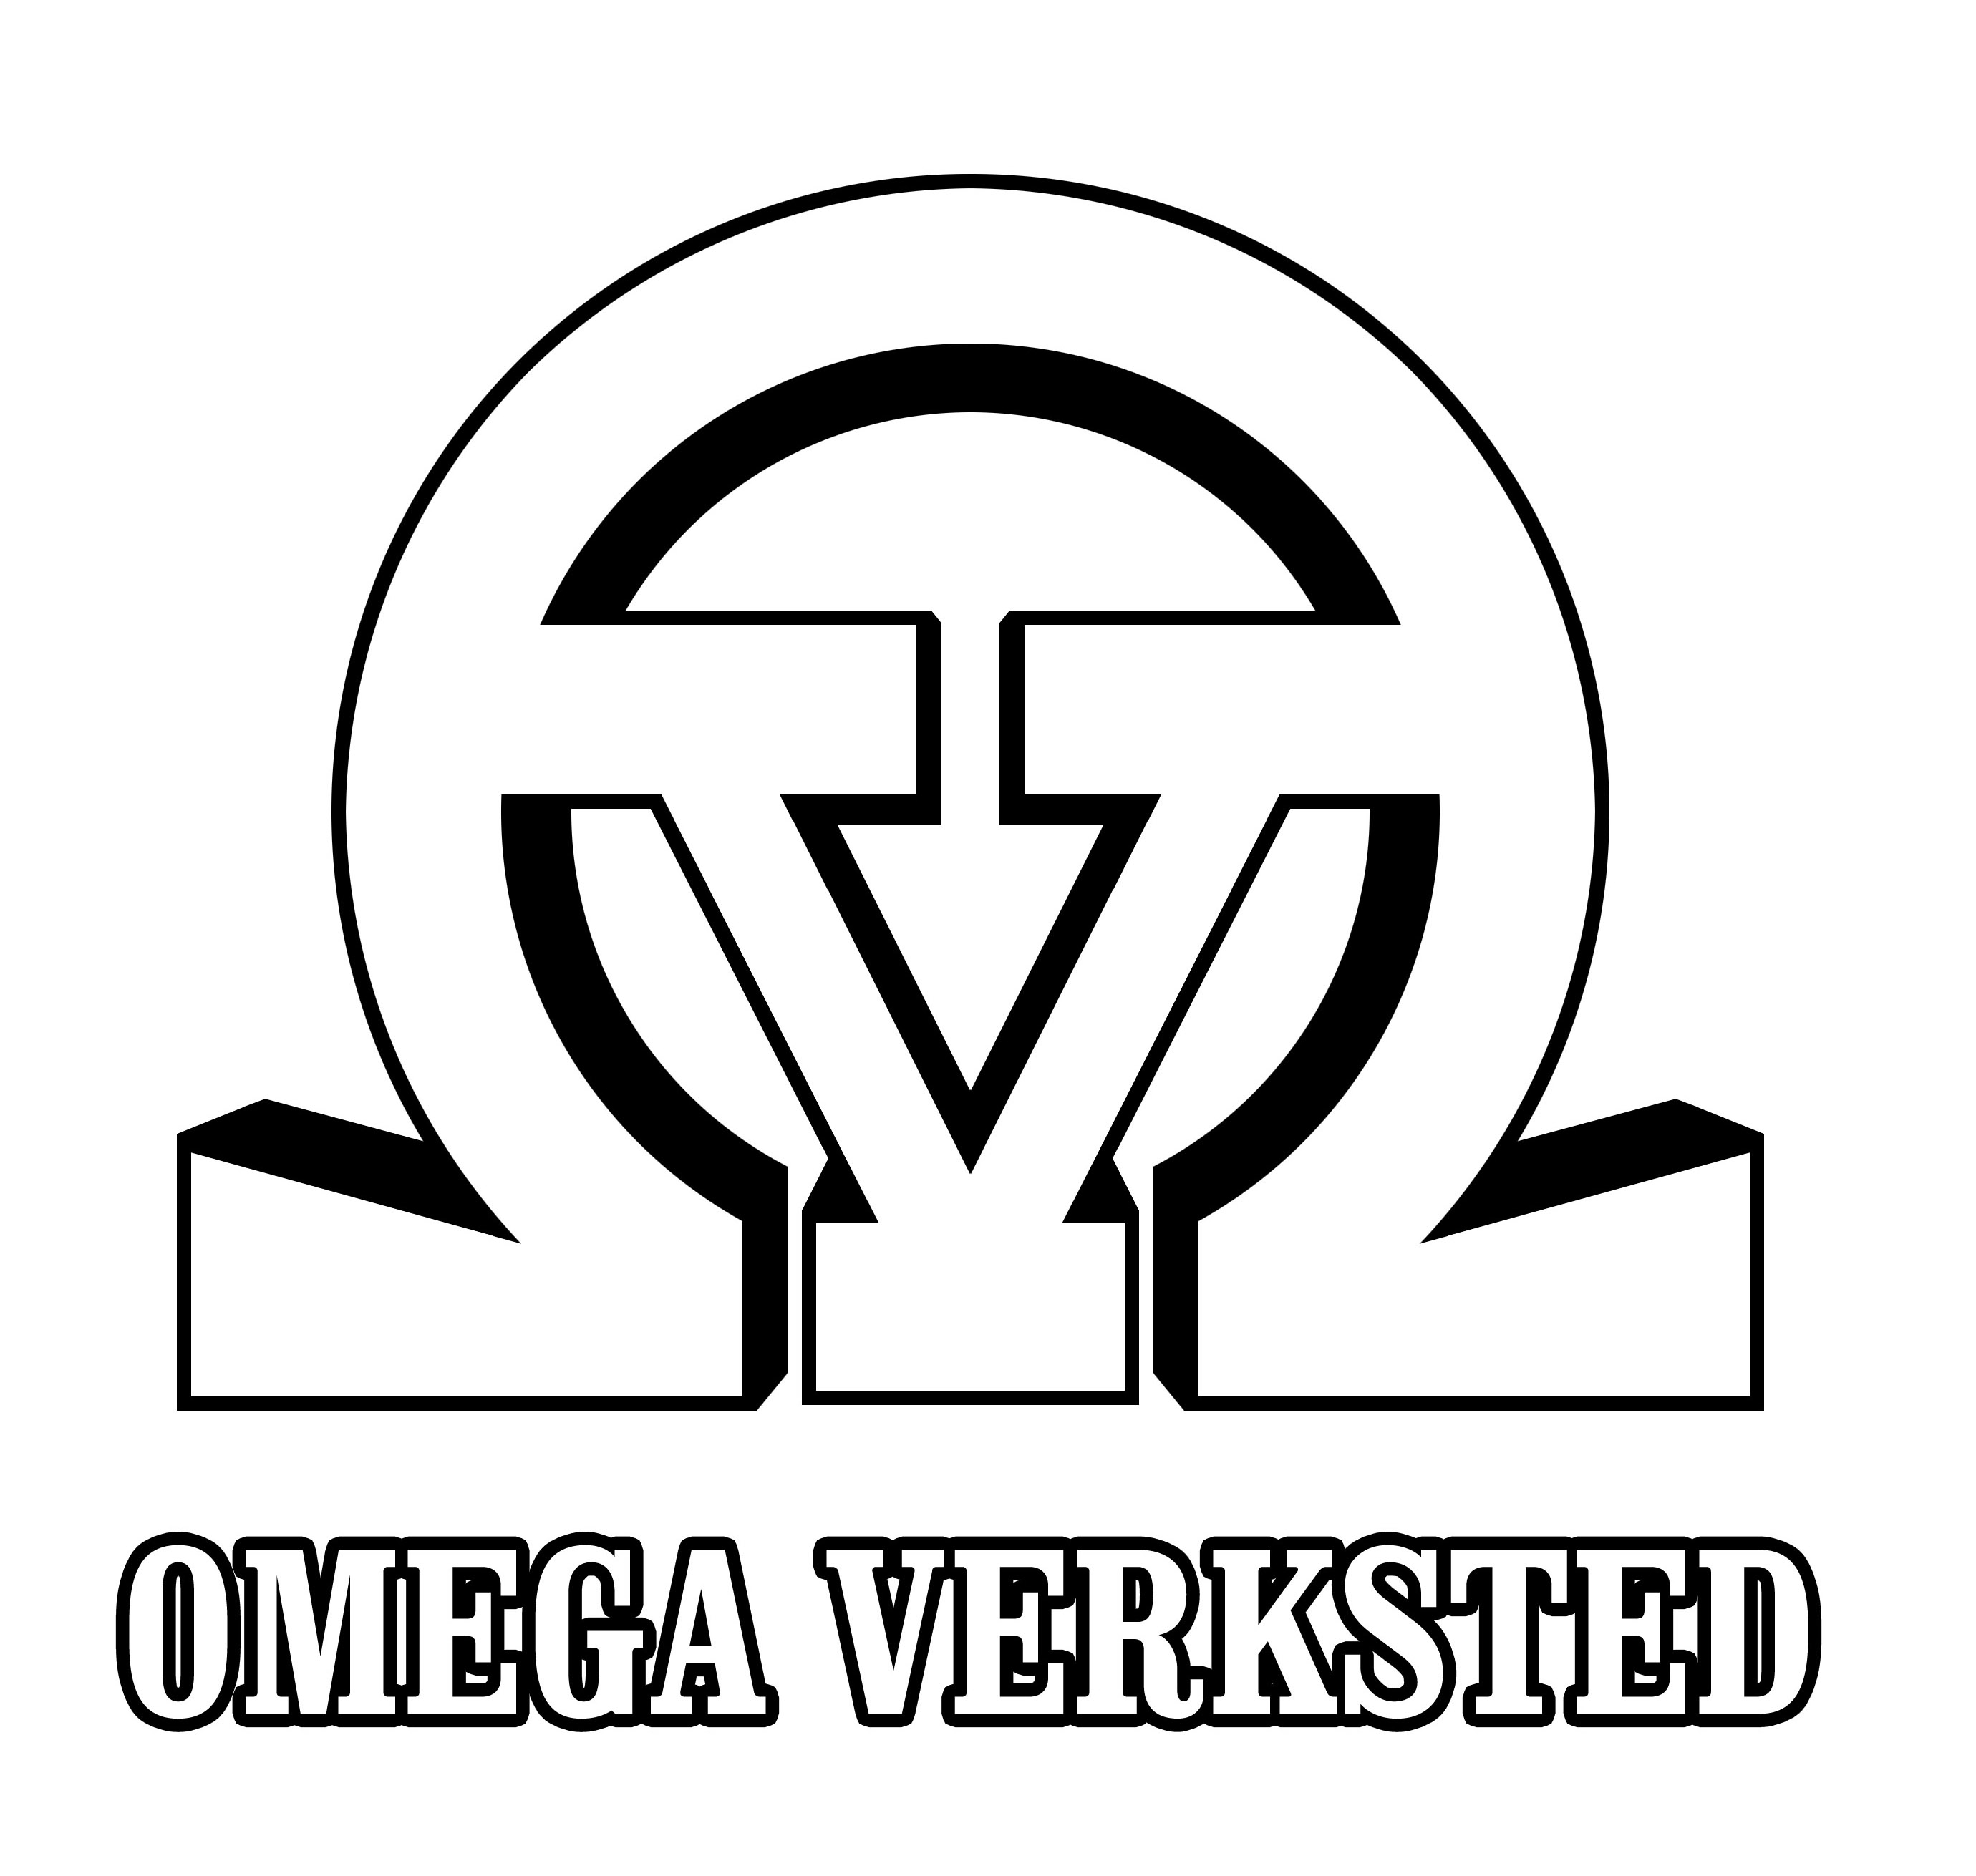 Omegav inverted1.jpg